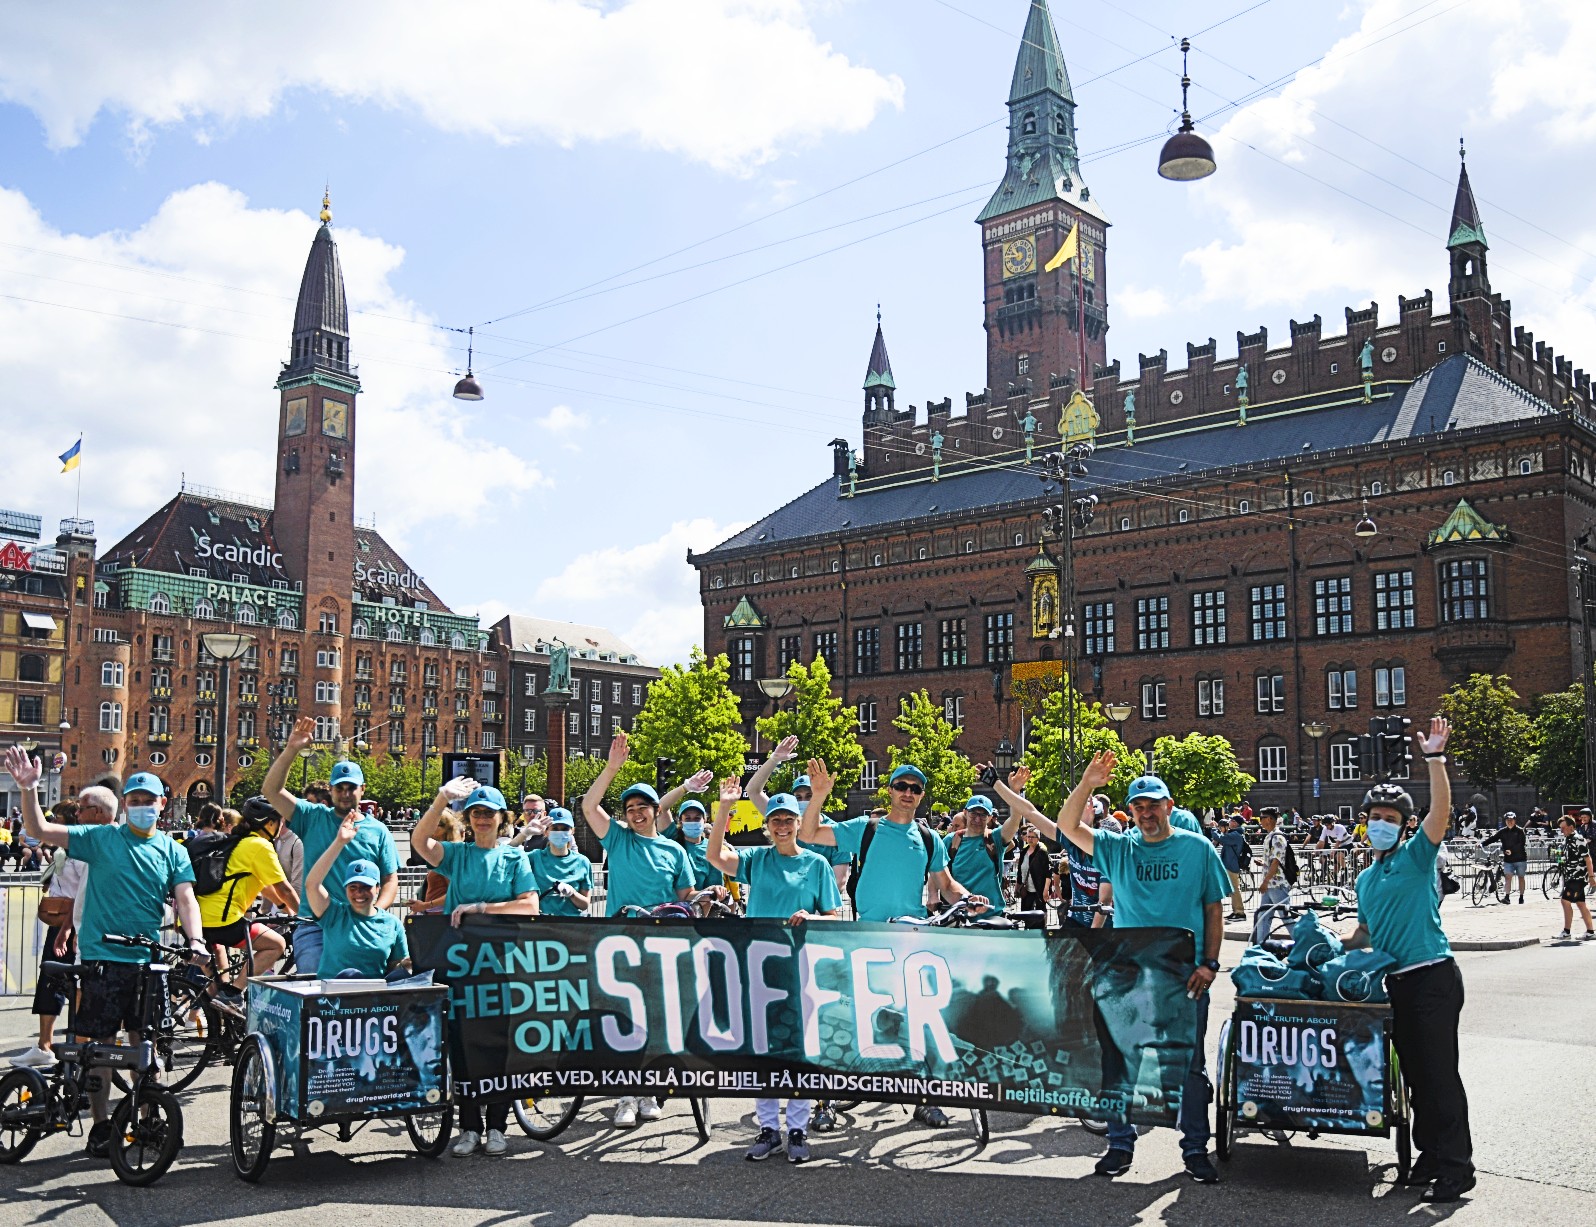 Dobrovolníci z Dánské scientologické církve přinesli svou iniciativu Truth About Drugs na zahájení letošního Tour de France v dánské Kodani.